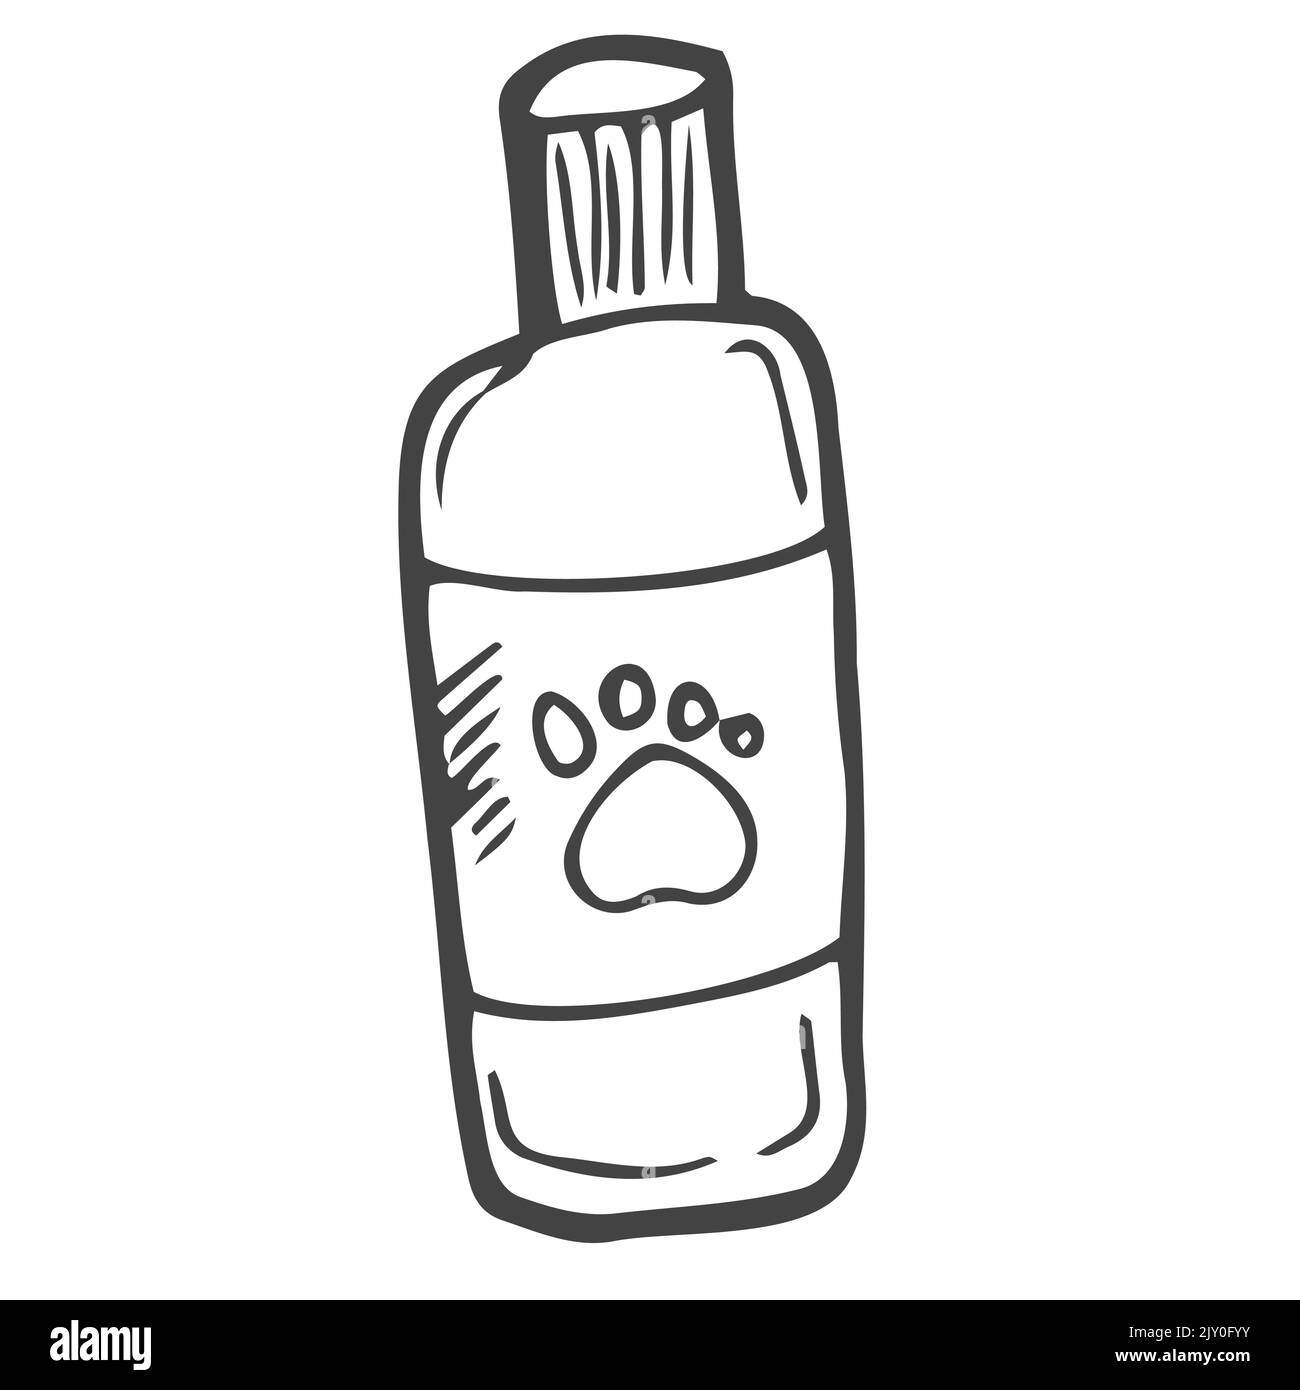 Shampooing pour animaux de compagnie Banque d'images noir et blanc - Alamy